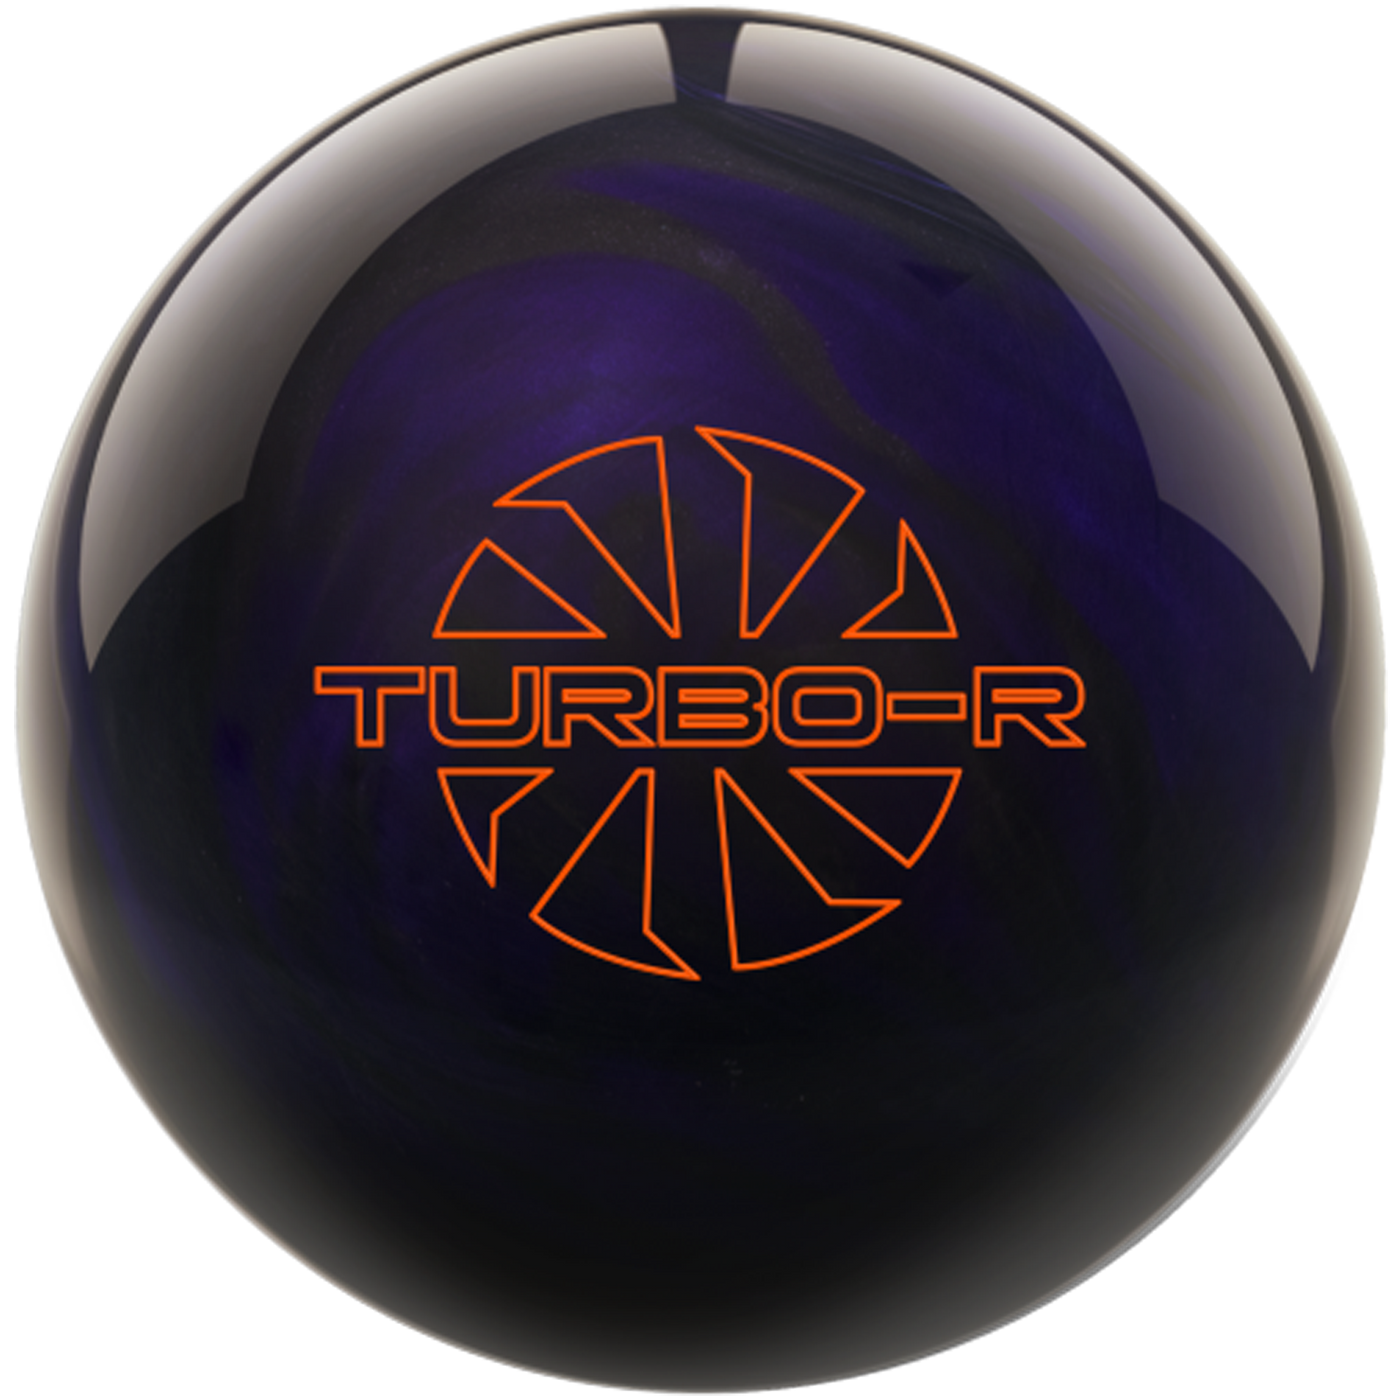 Turbo/R Purple/Black Bowling Ball